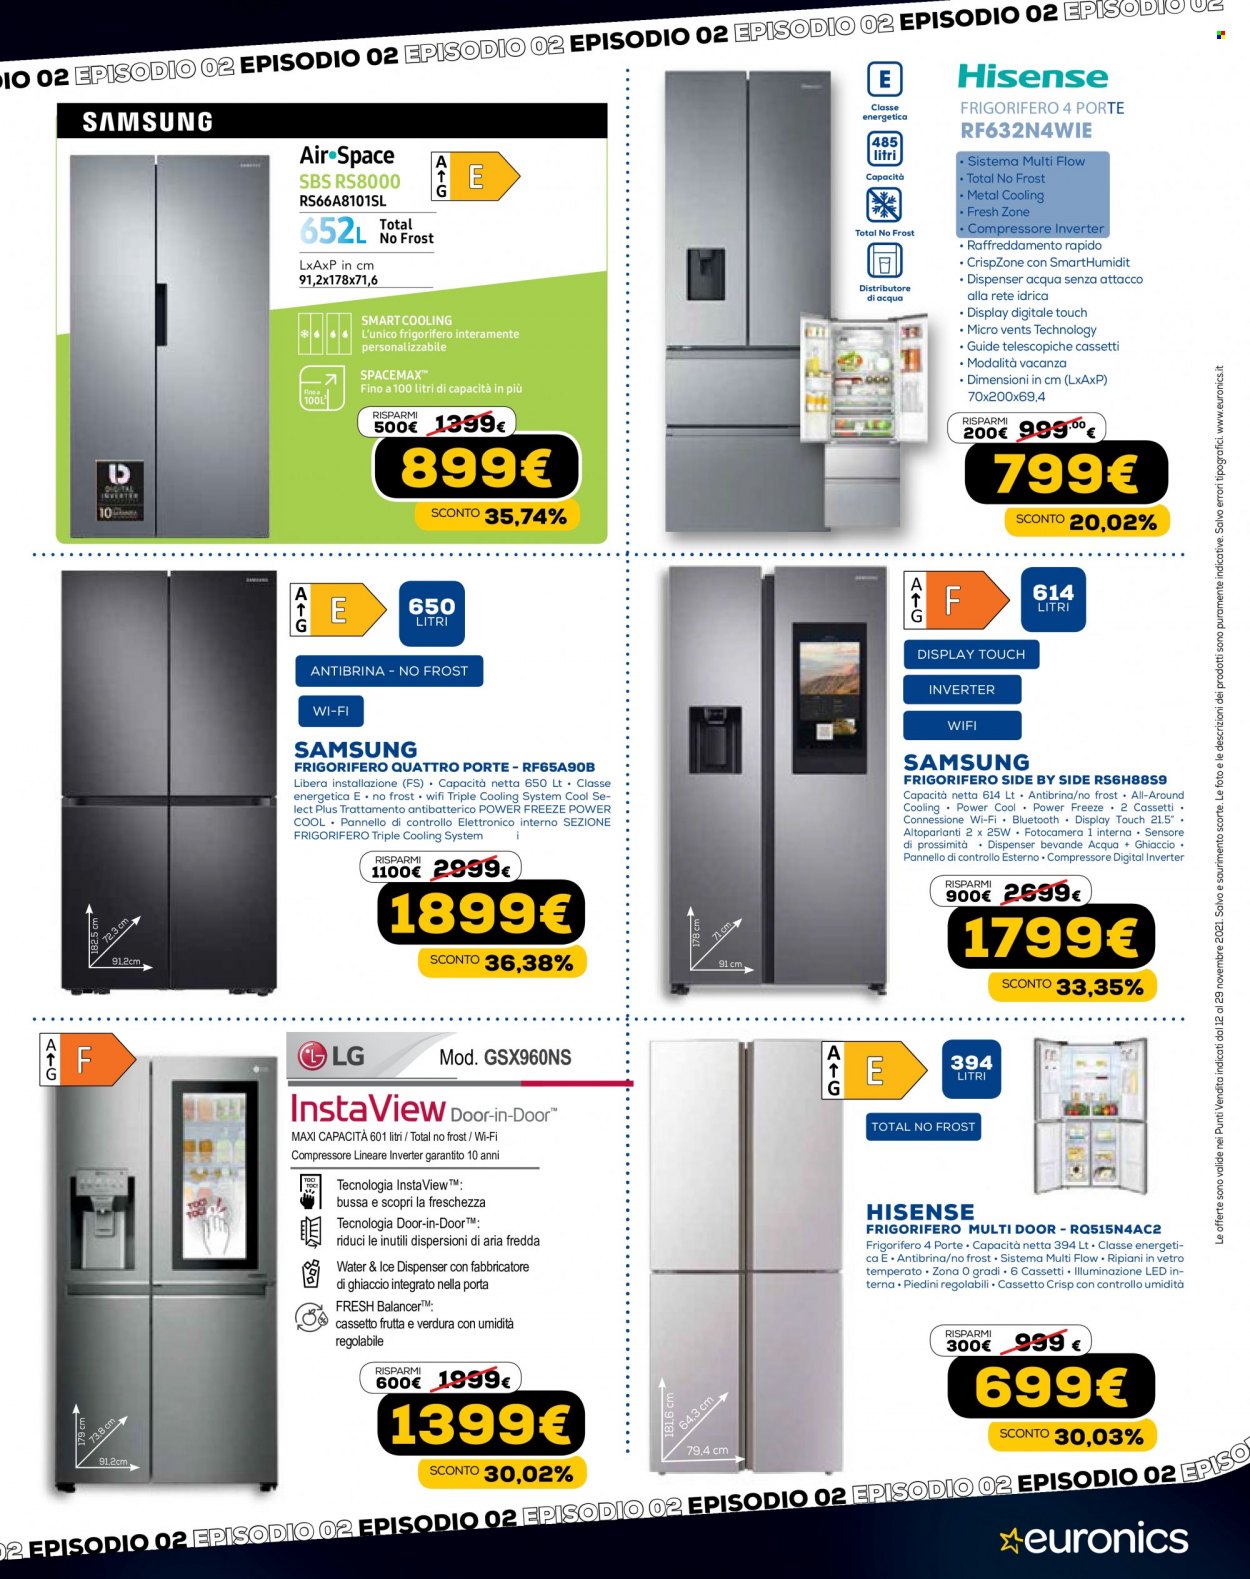 thumbnail - Volantino Euronics - 12/11/2021 - 29/11/2021 - Prodotti in offerta - Samsung, fotocamera, frigorifero, frigorifero due porte, fabbricatore di ghiaccio. Pagina 21.